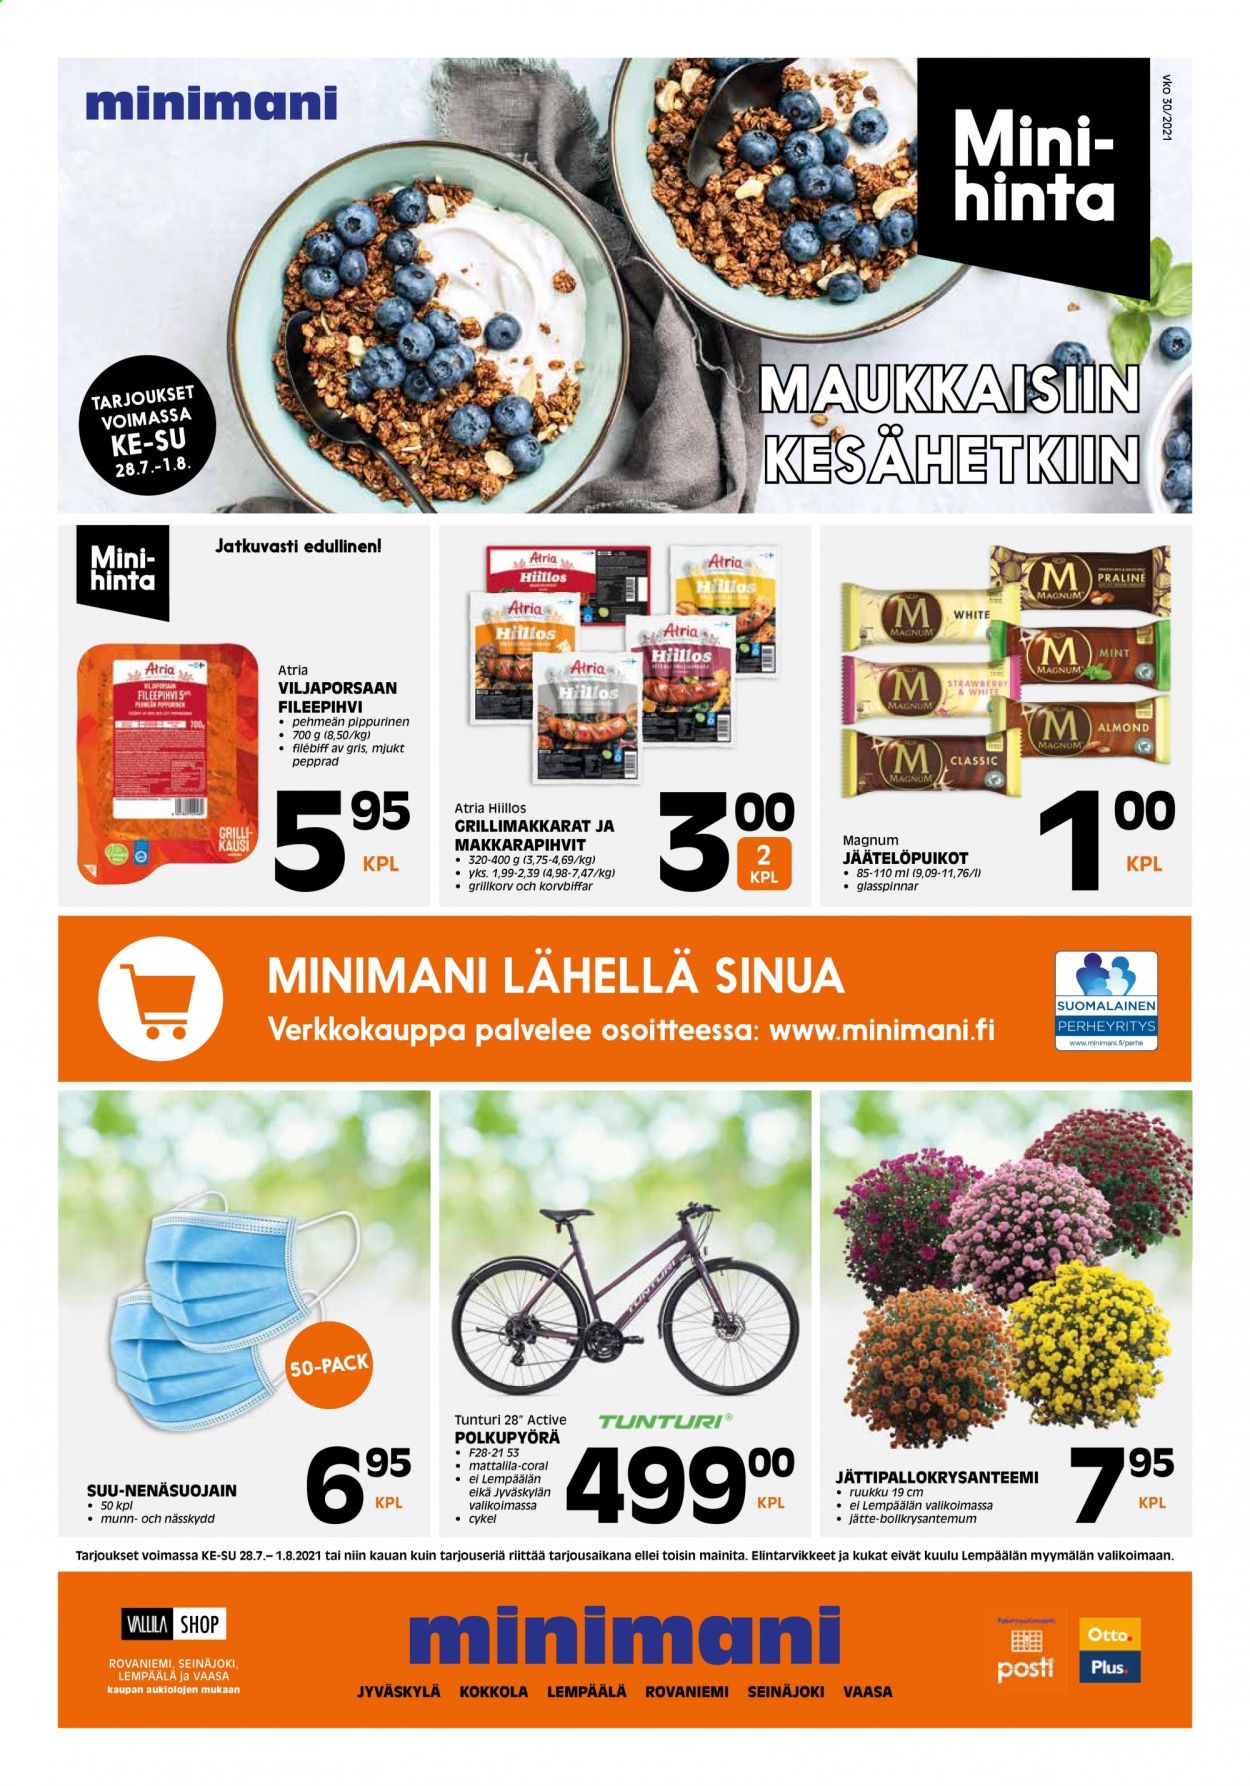 thumbnail - Minimani tarjoukset  - 28.07.2021 - 01.08.2021 - Tarjoustuotteet - Atria, Magnum, jäätelöpuikko, polkupyörä. Sivu 1.